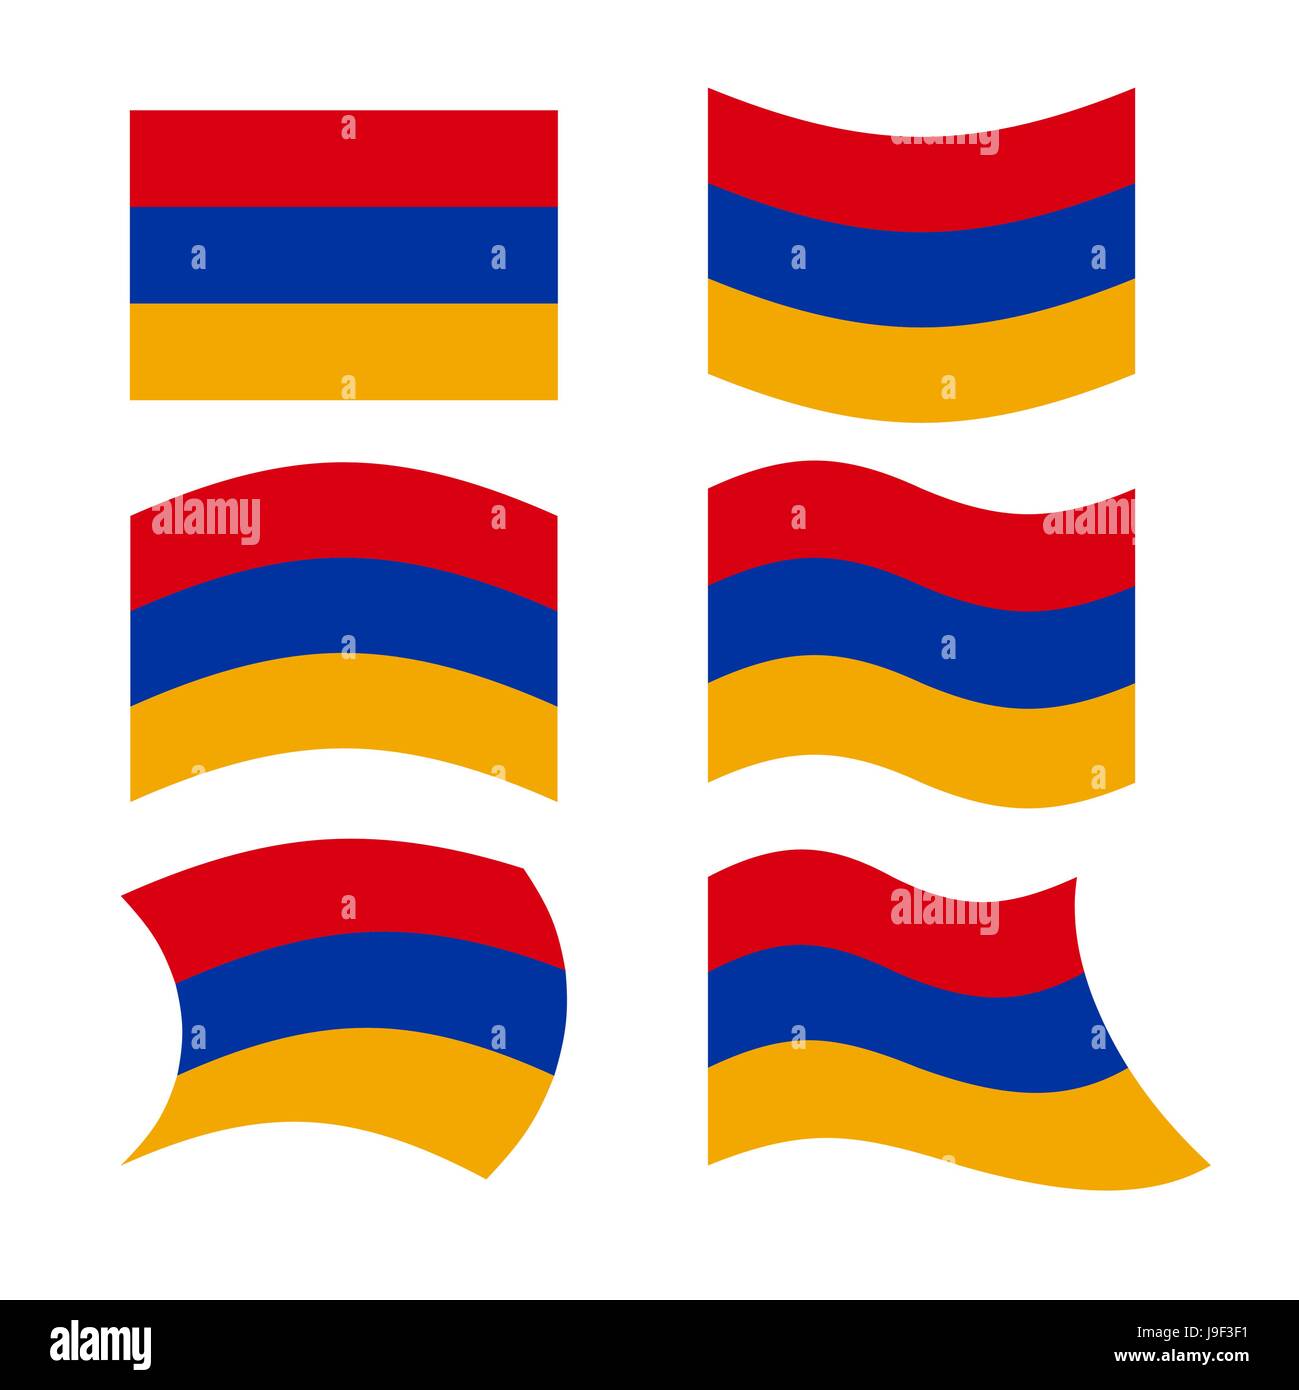 Armenien-Flagge. Satz von Flags der armenischen Republik in verschiedenen Formen. Flagge der armenischen Staates im Südkaukasus entwickelt. Stock Vektor